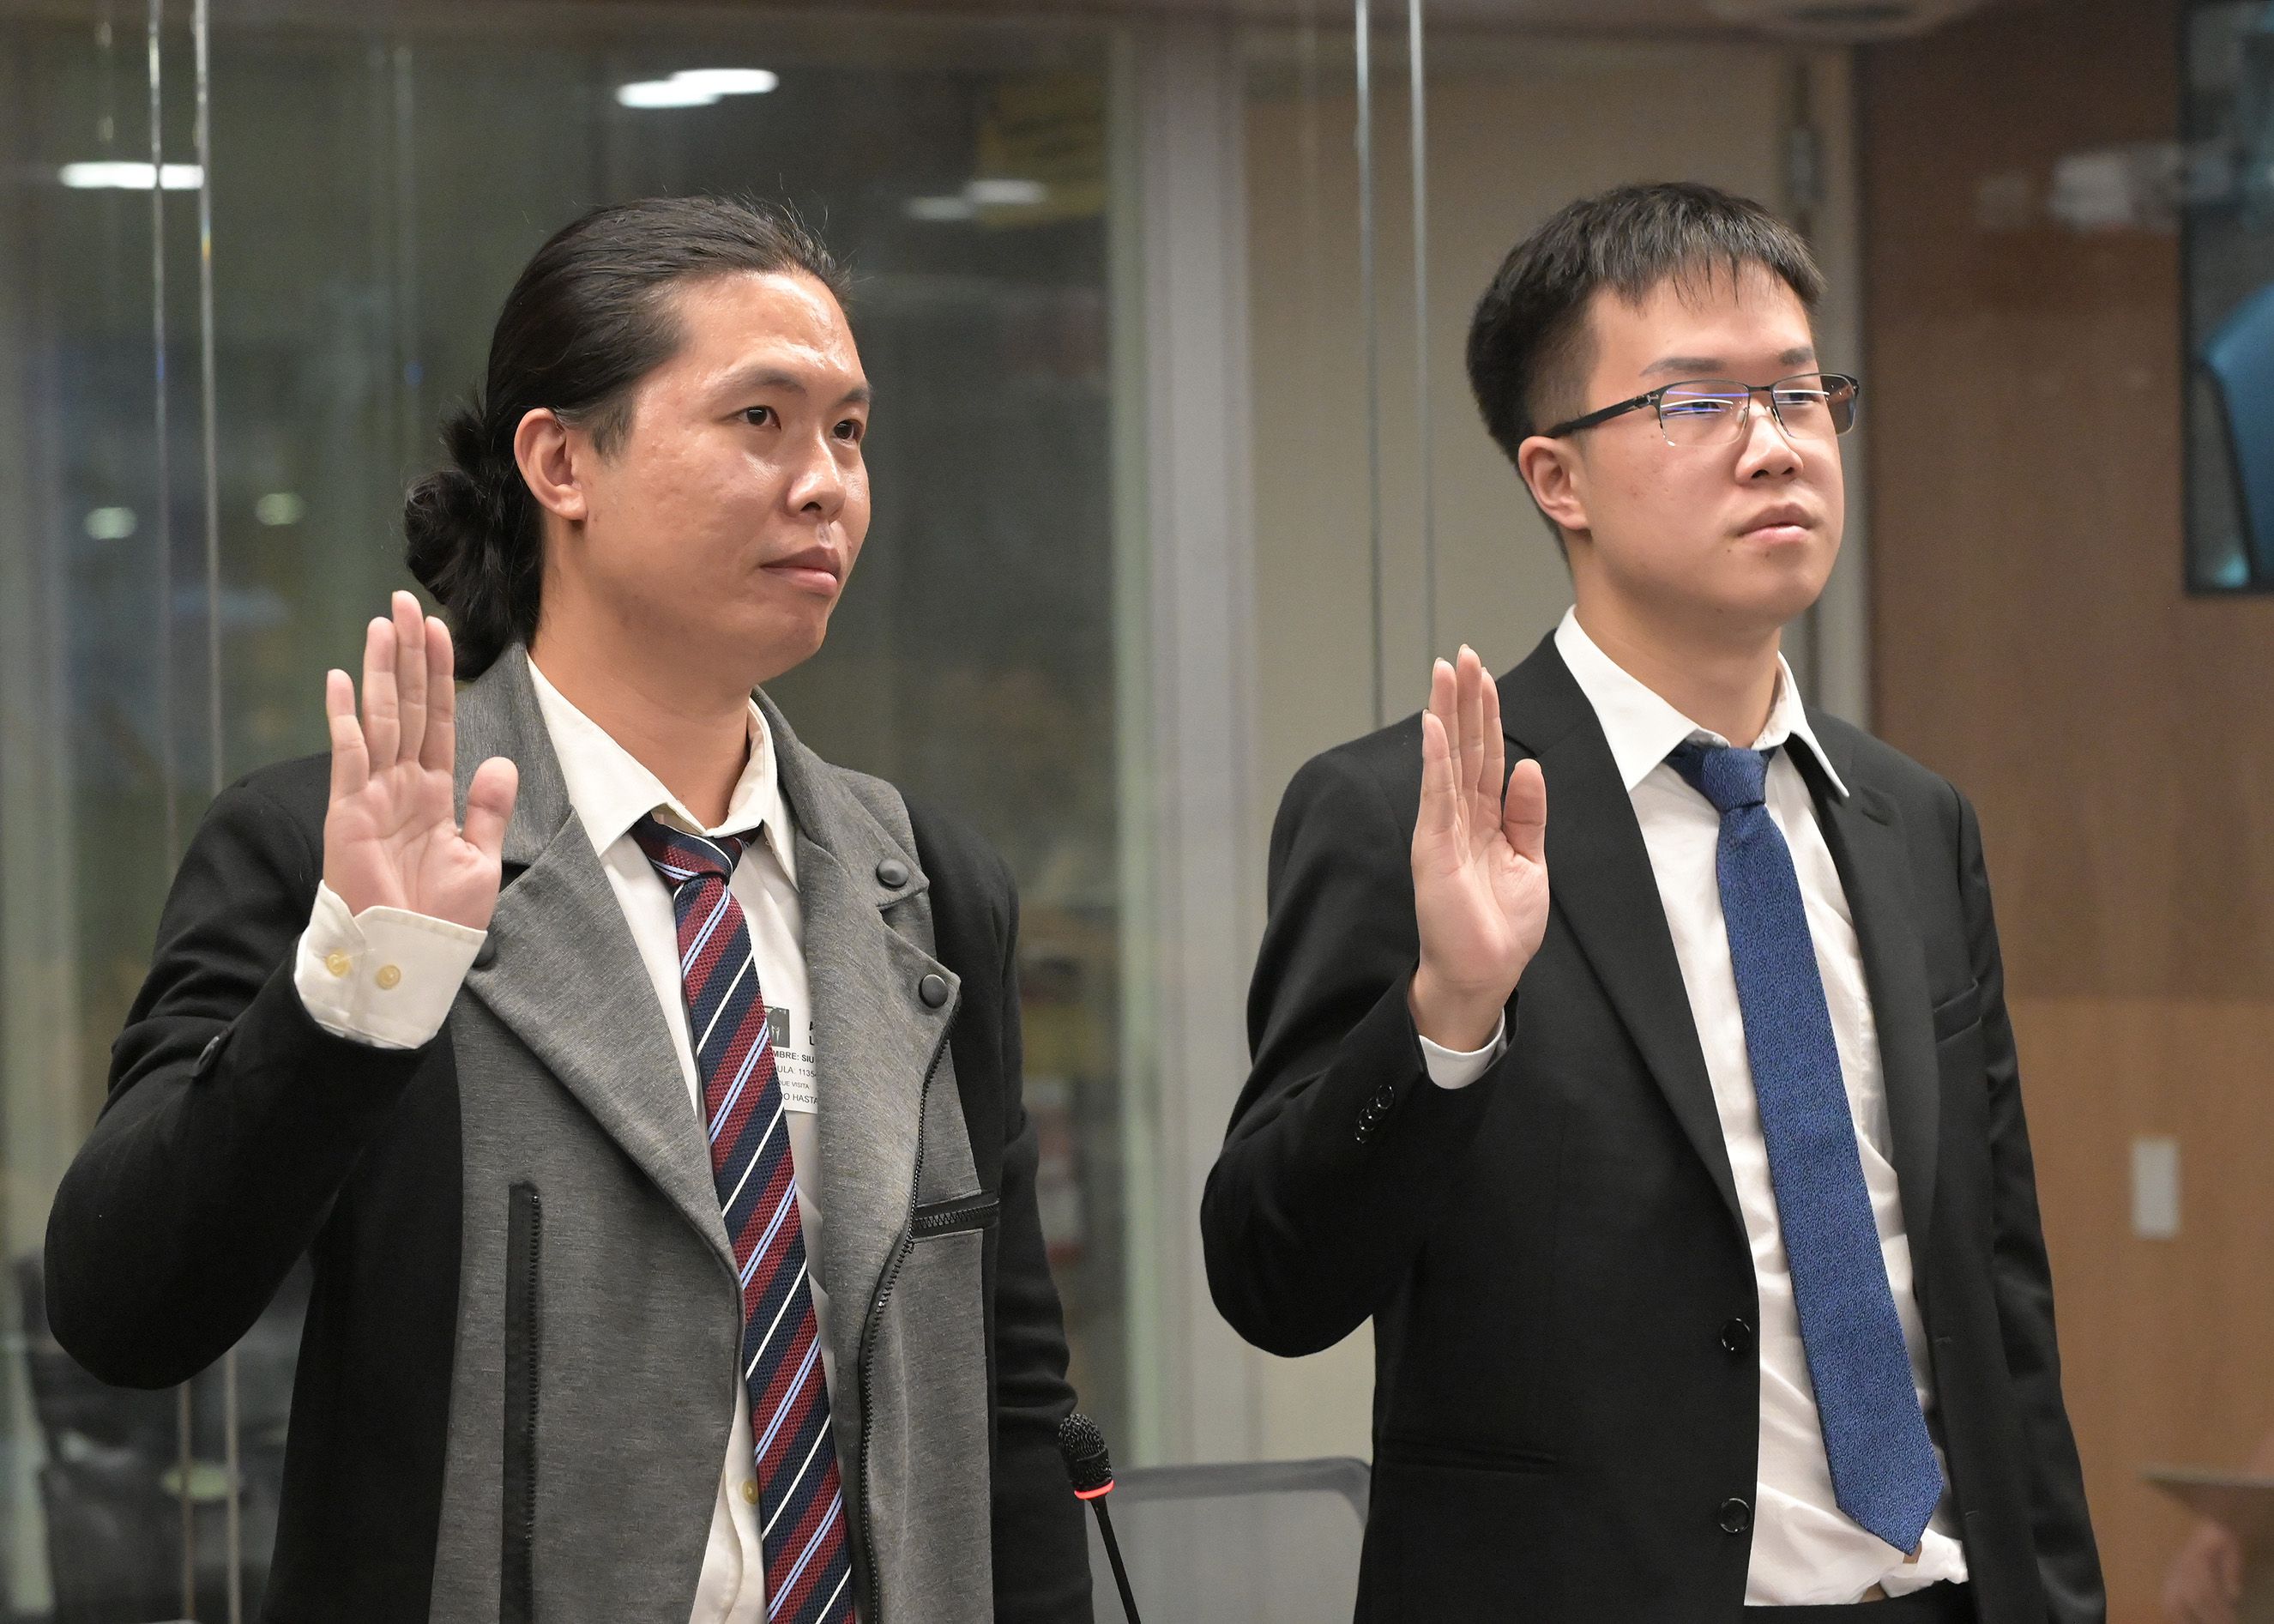 En la imagen se observa la juramentación de De Shen Lin Hu y su traductor personal, previo a comparecer.